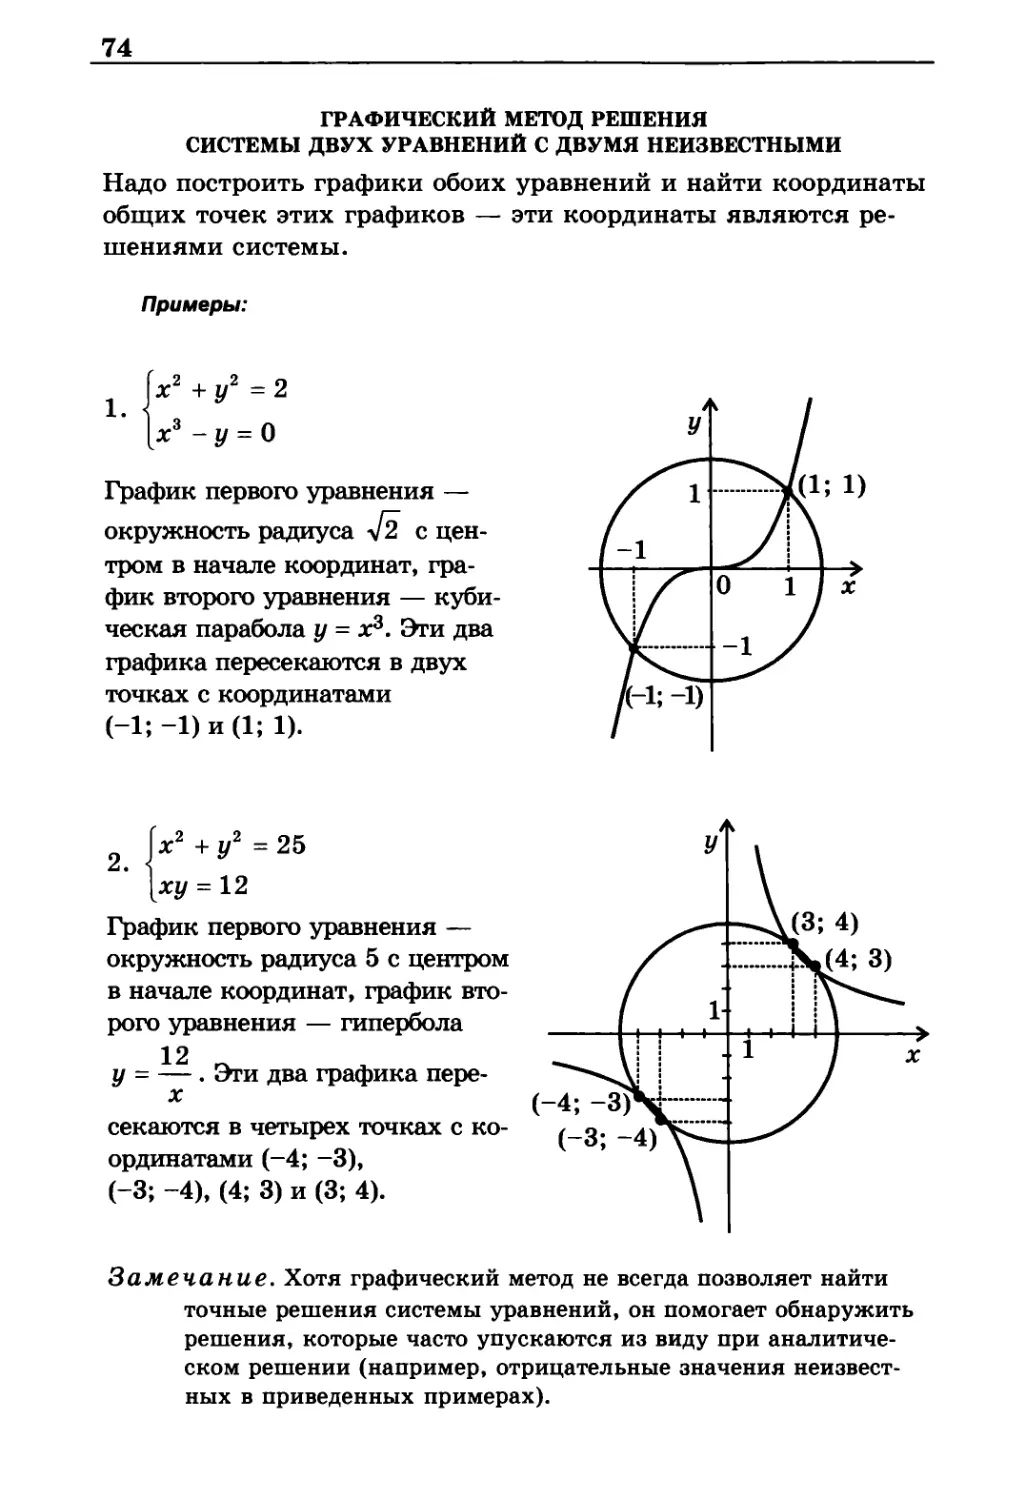 Графический метод решения системы двух уравнений с двумя неизвестными